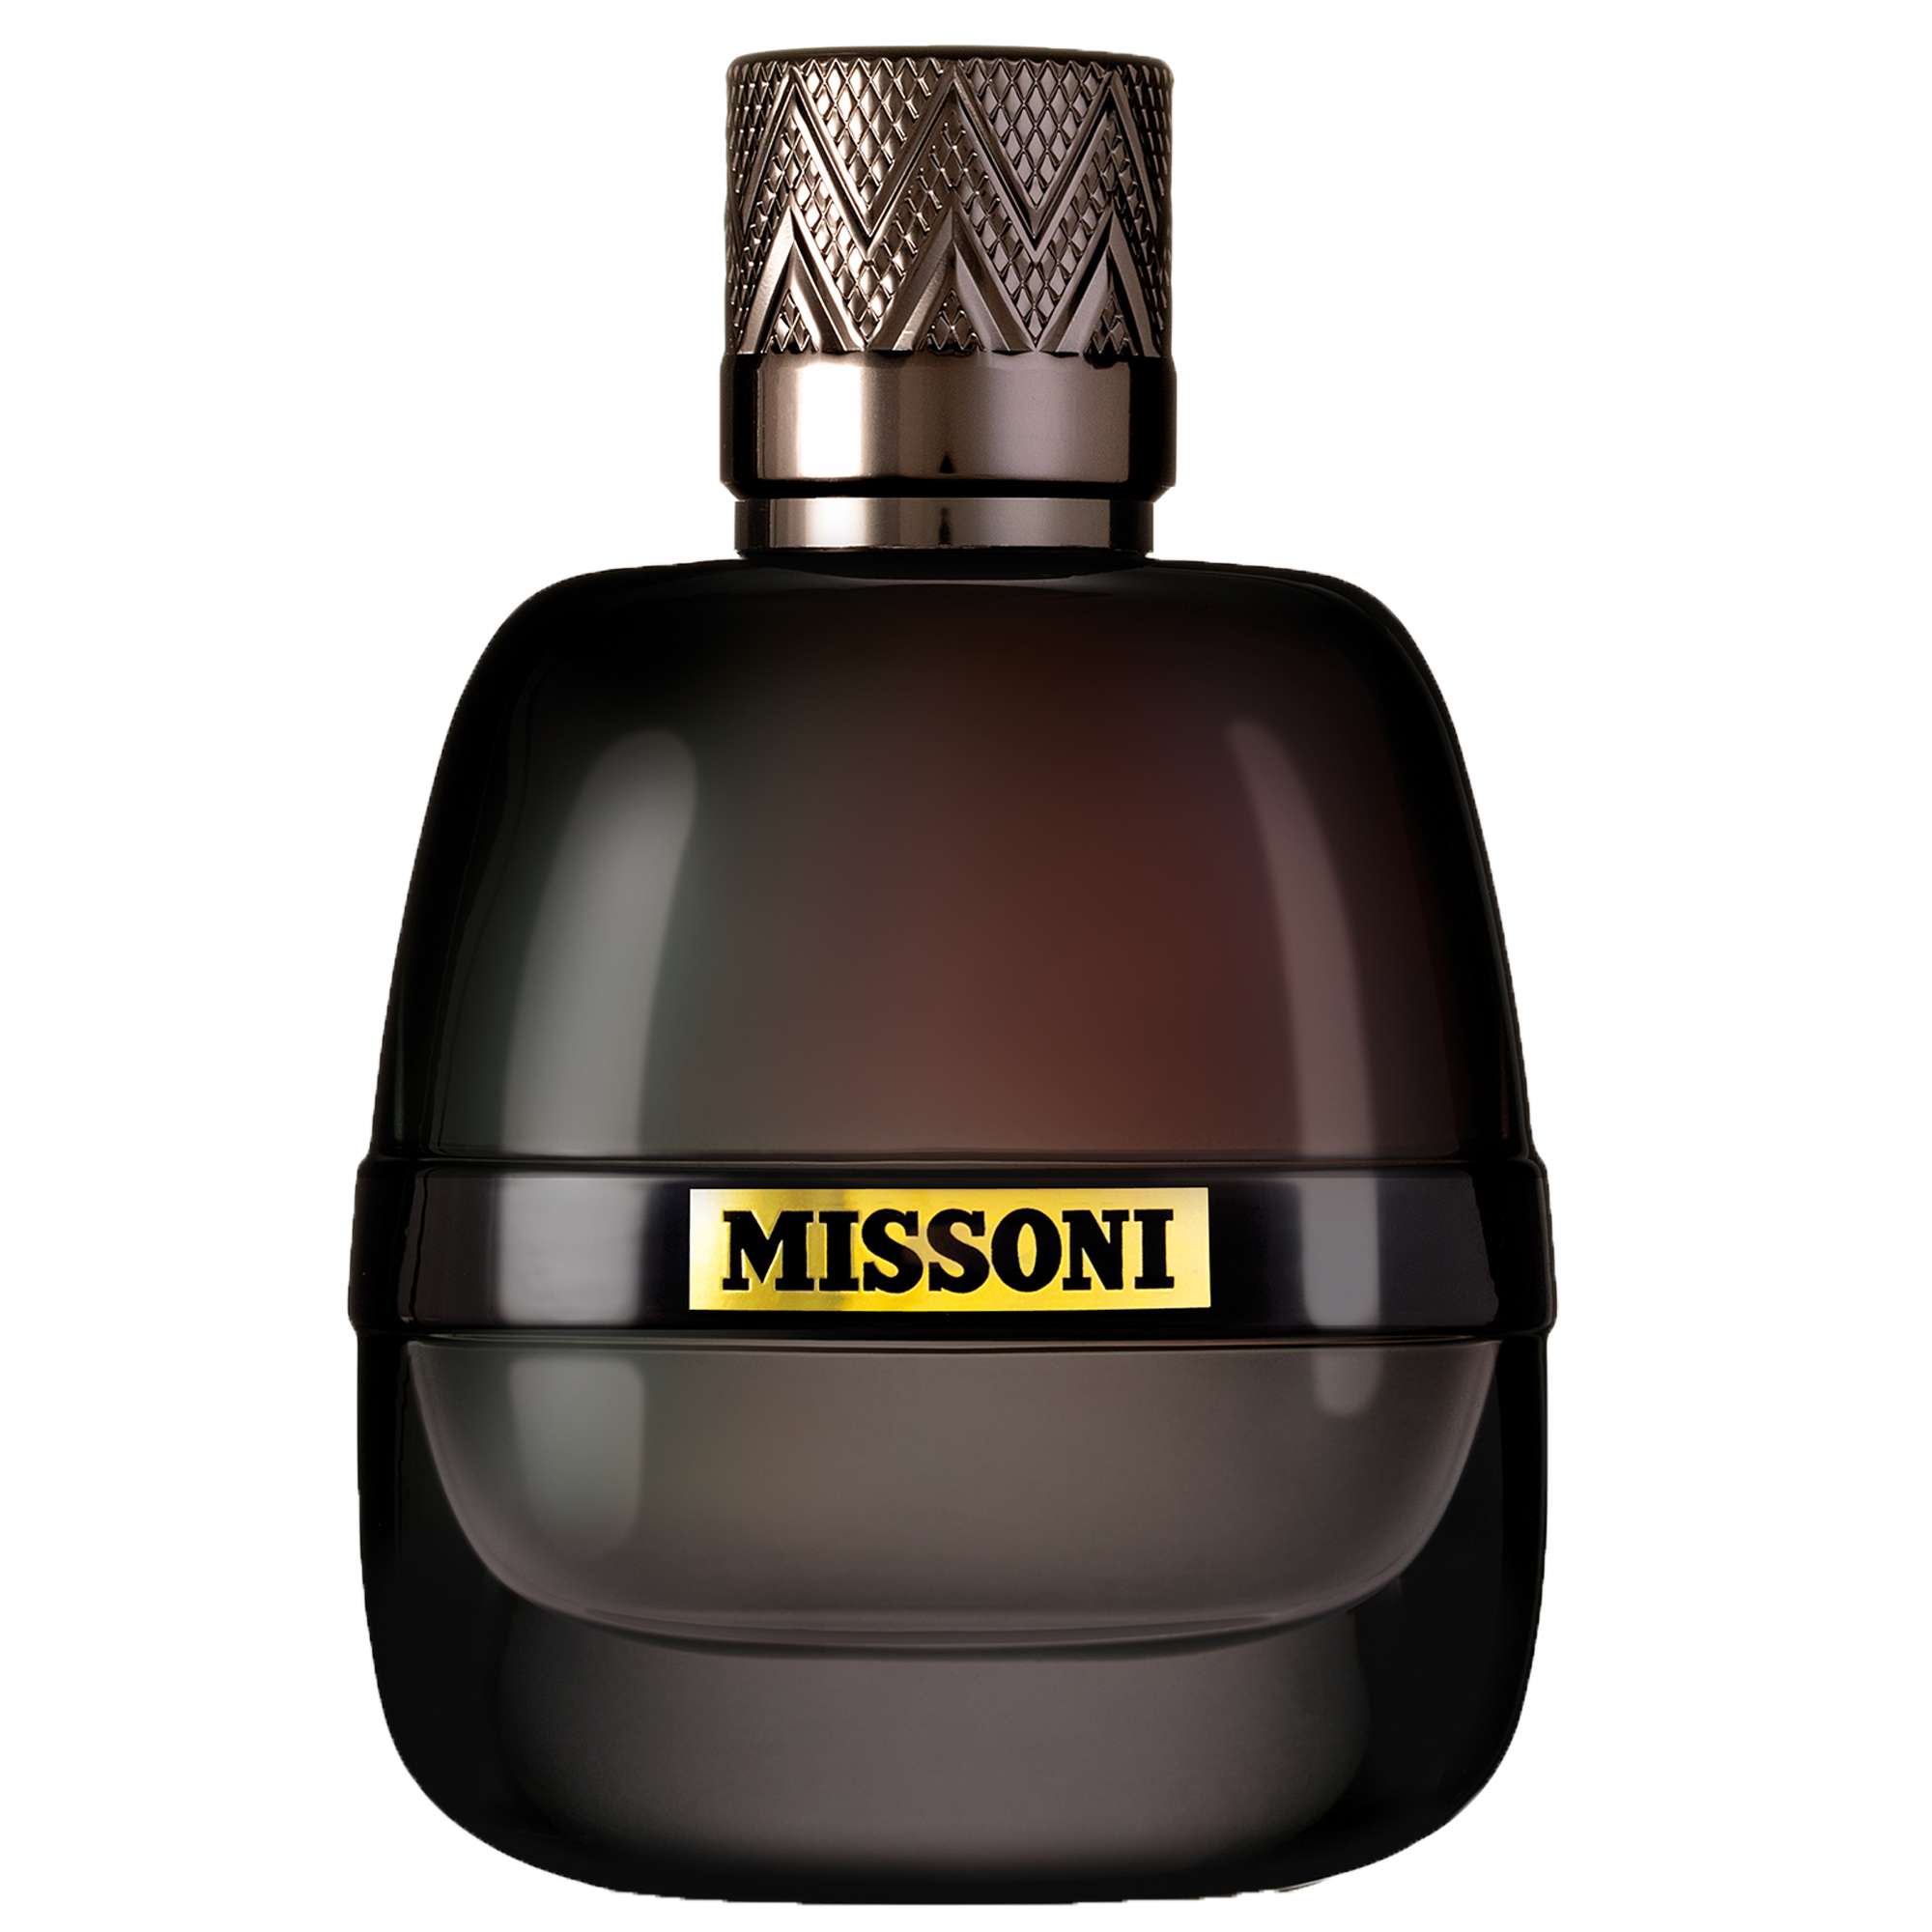 Photos - Women's Fragrance Missoni Parfum Pour Homme Eau de Parfum Spray 100ml 